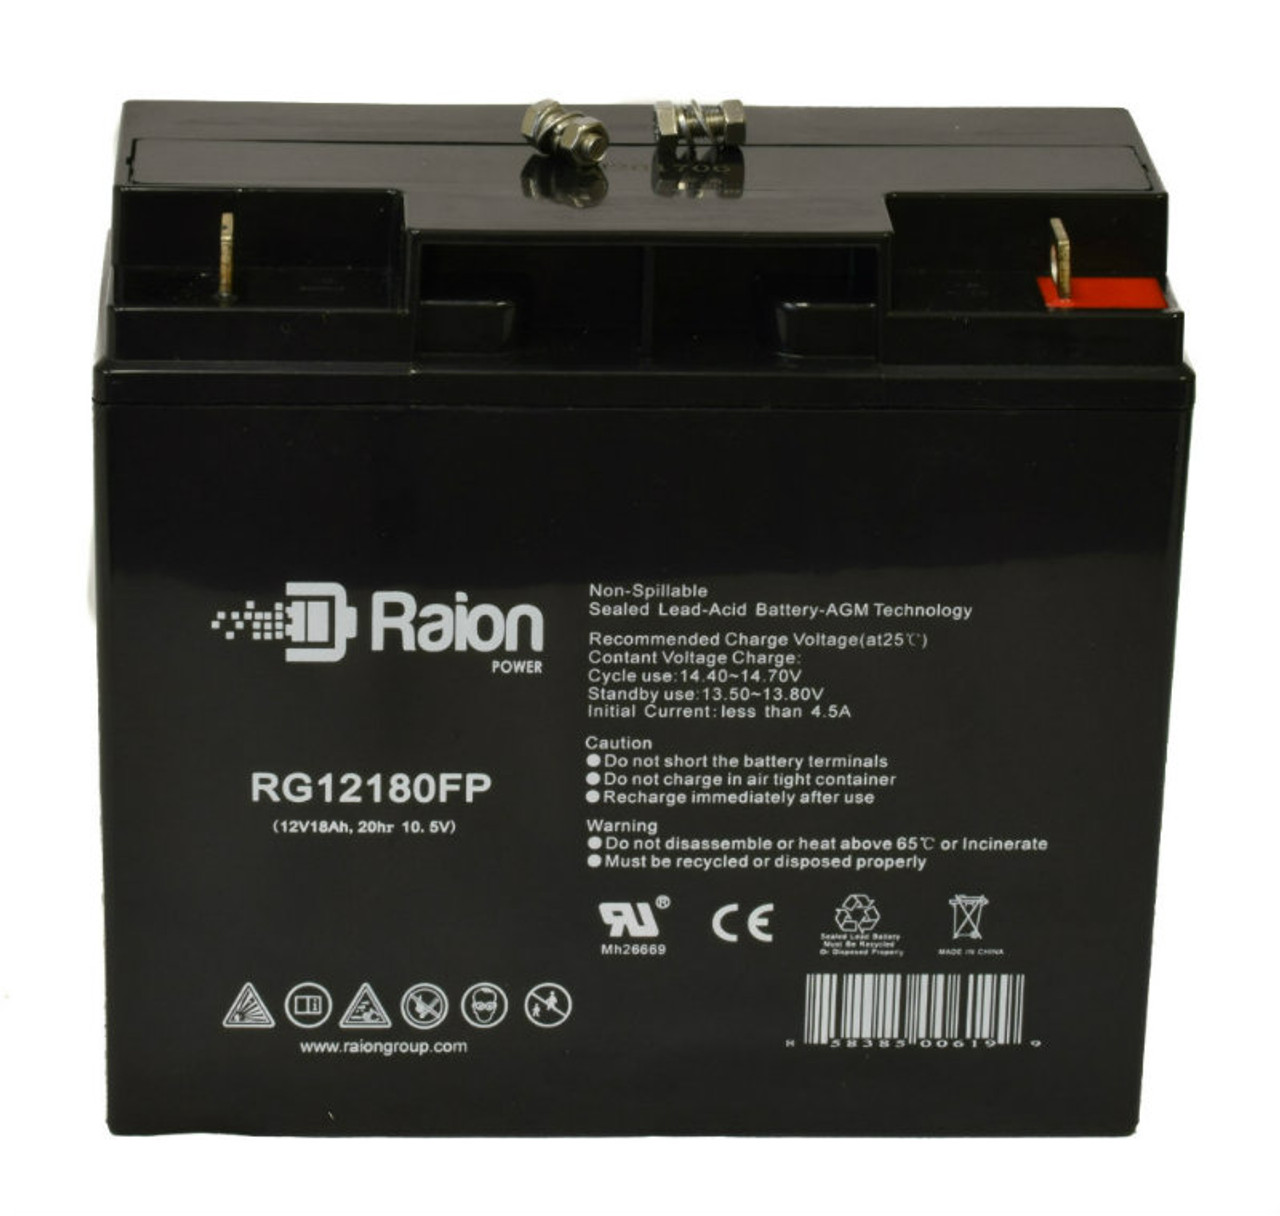 Raion Power RG12180FP 12V 18Ah AGM Battery for EverStart HP450-2 Maxx 500 amp Jump Starter